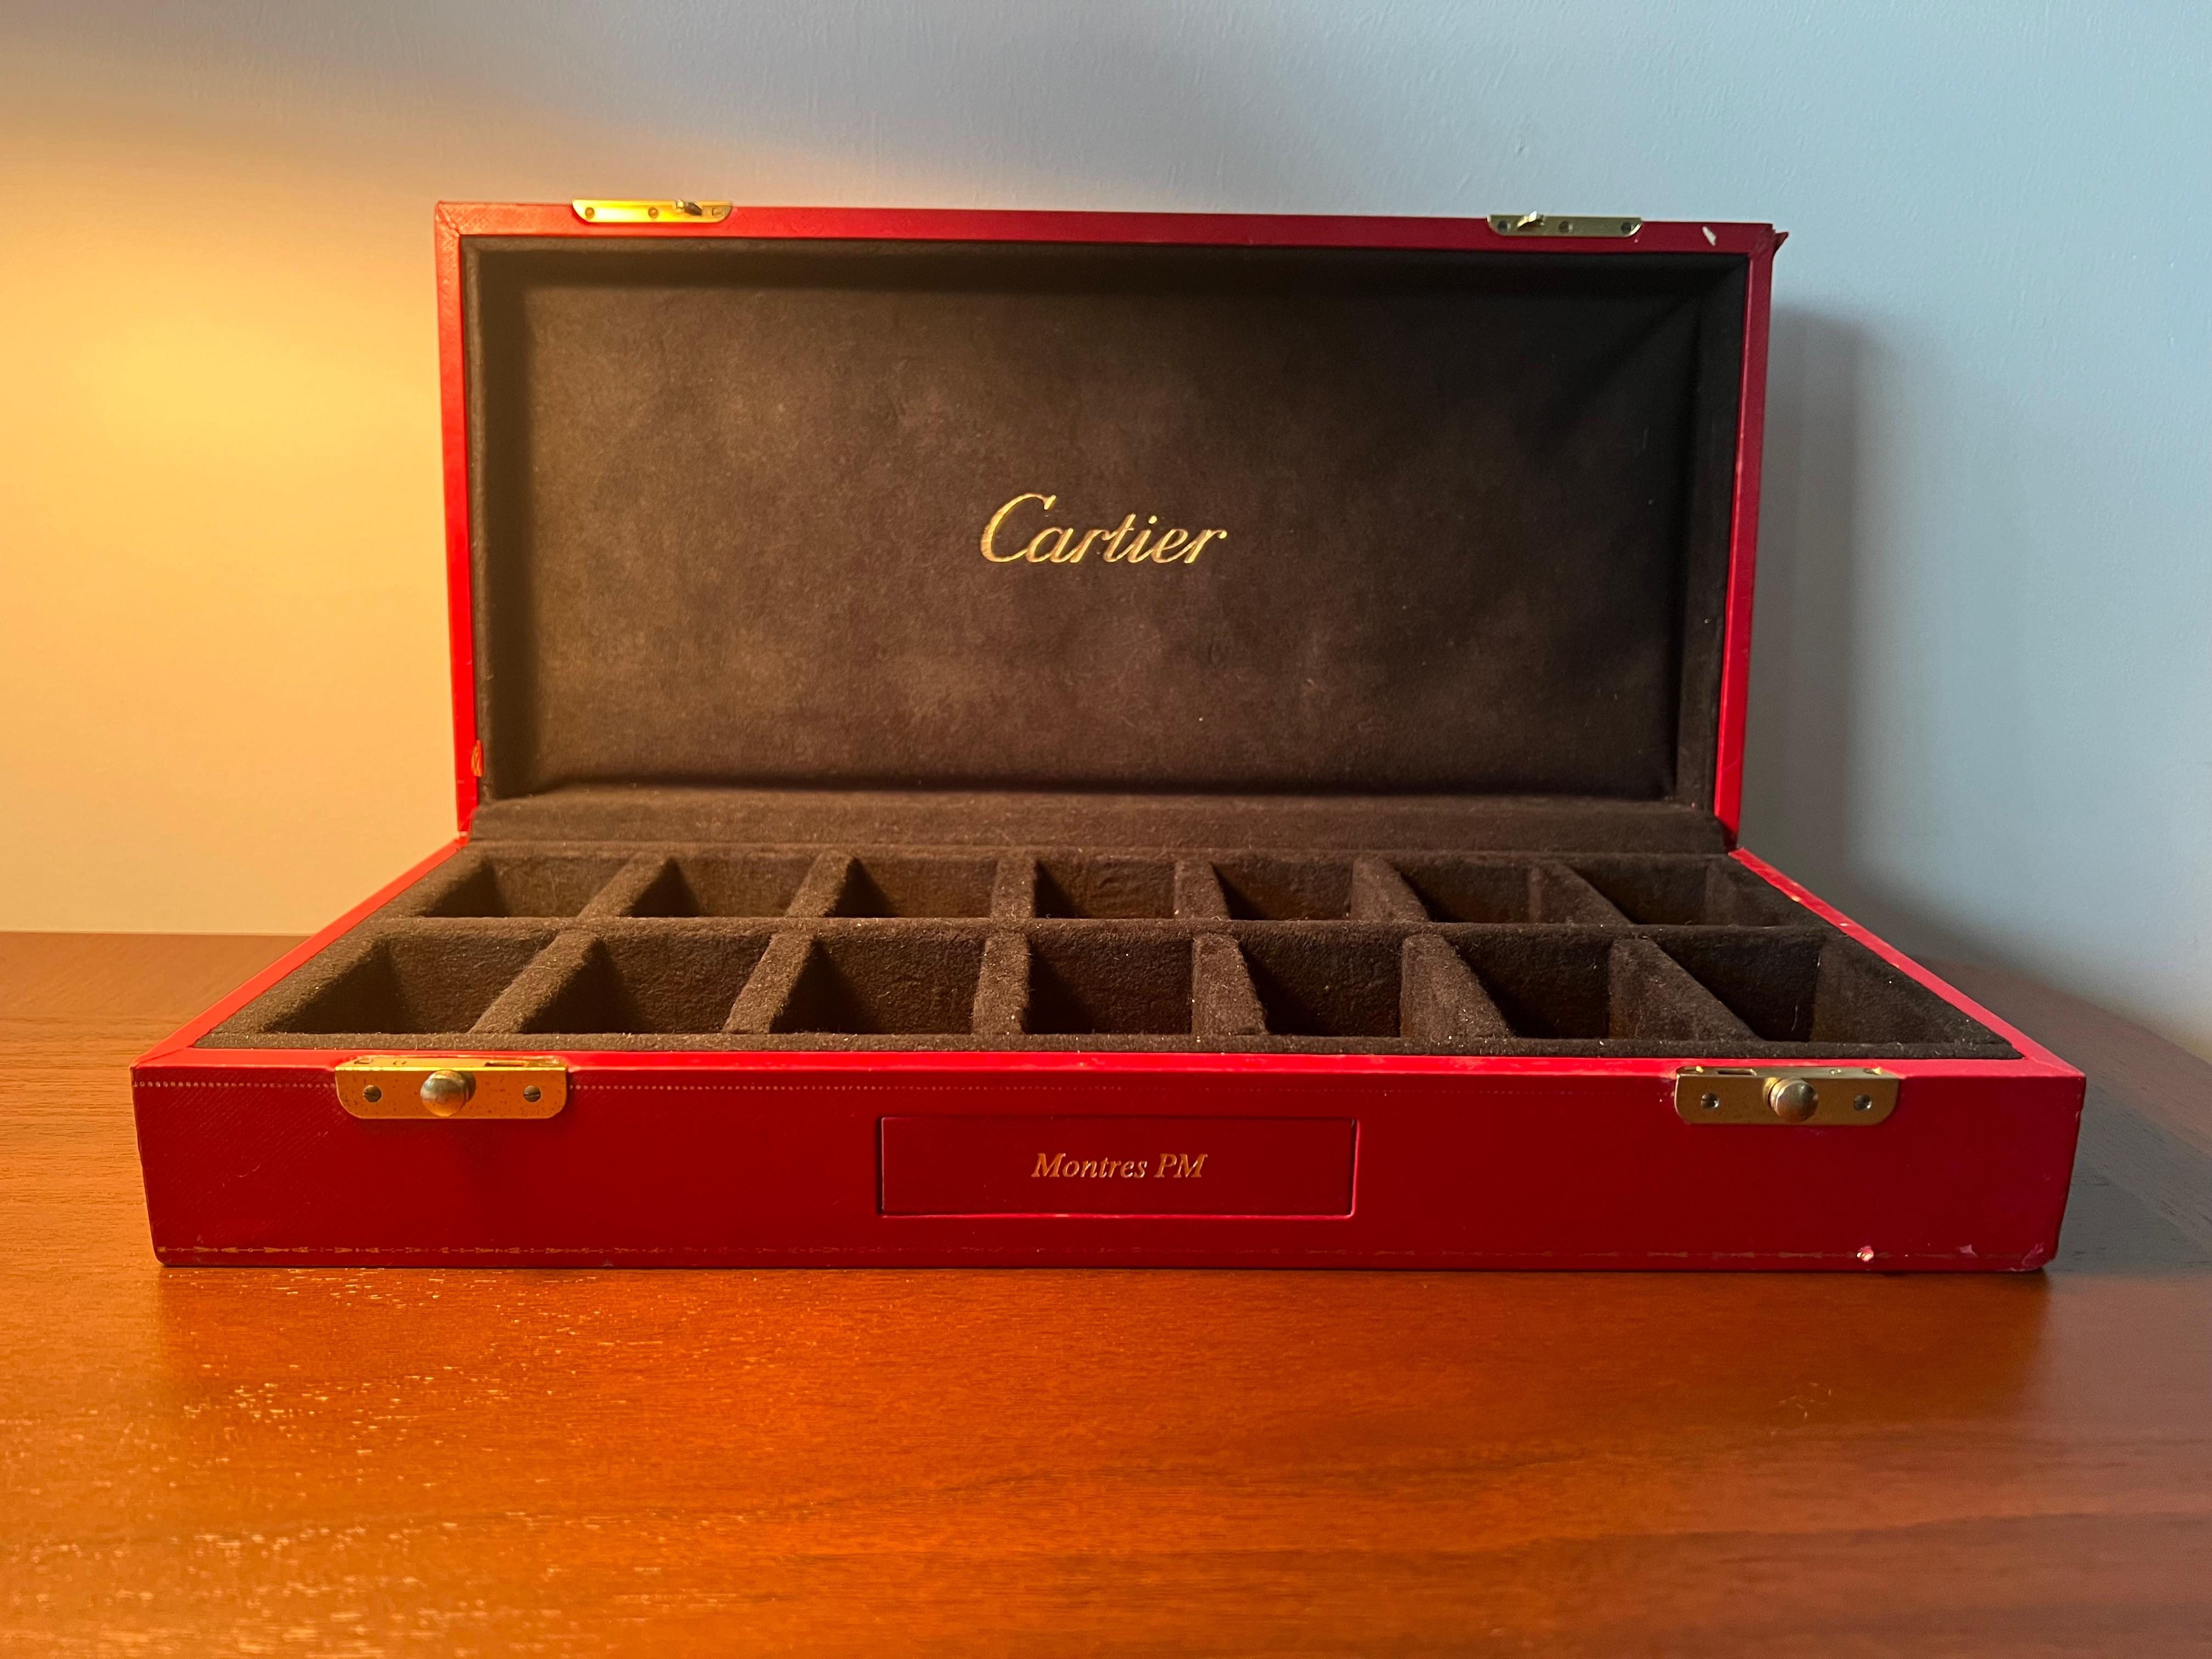 Ungewöhnliche und schwer zu finden, ein Cartier Geschäft Uhr Display-Box. Fasst 14 Uhren. Perfekt für eine Cartier Uhrensammlung!